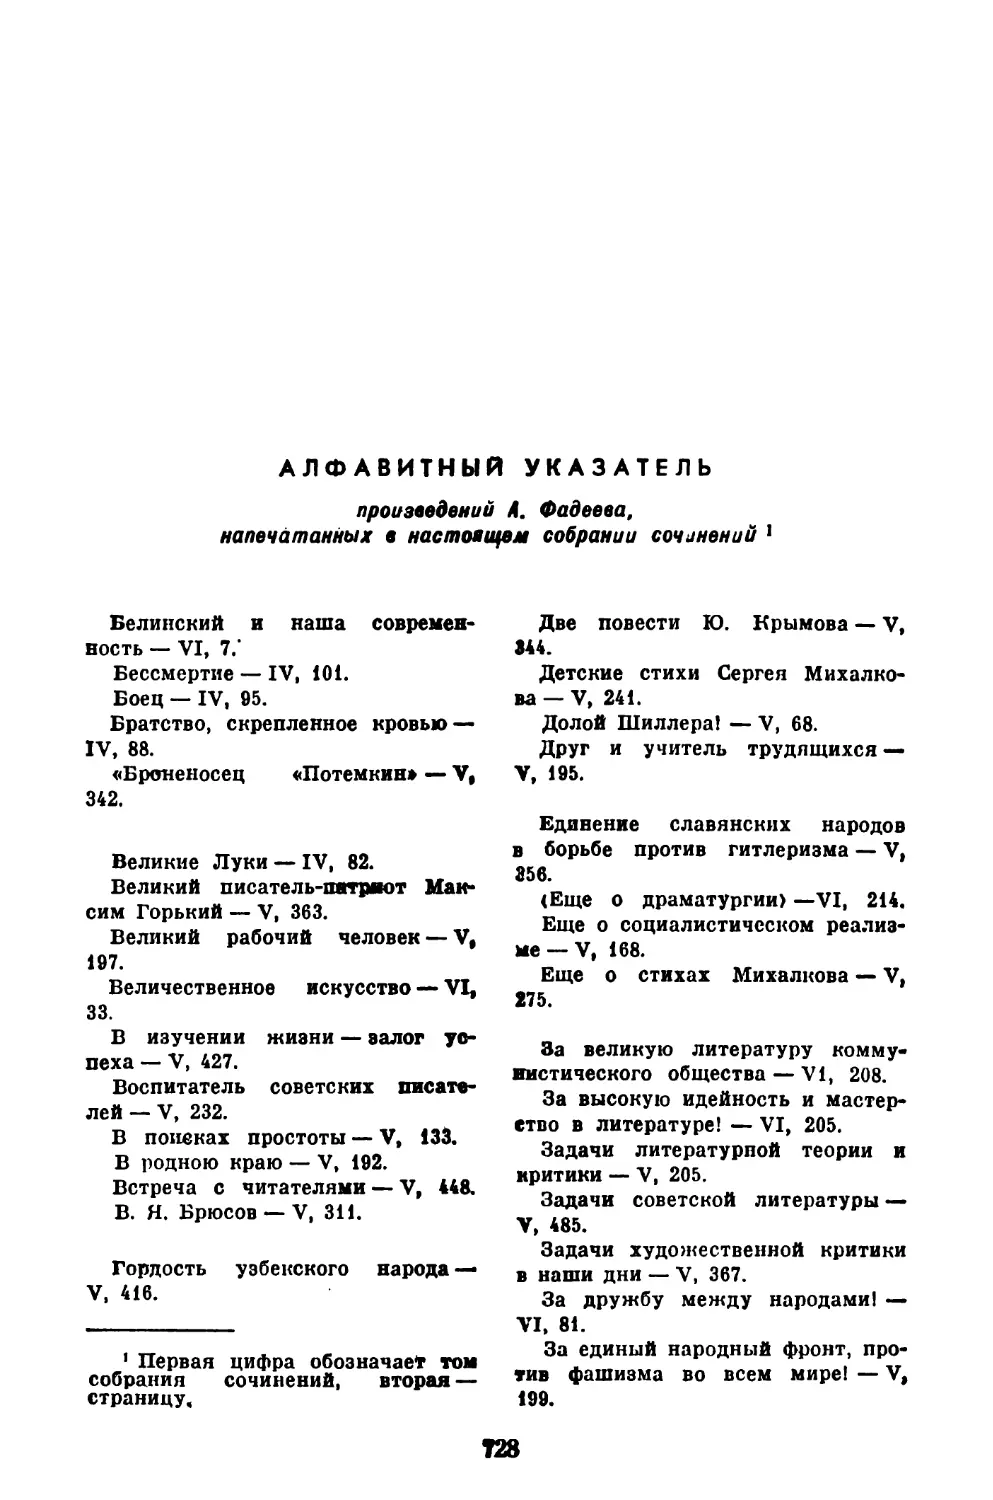 АЛФАВИТНЫЙ УКАЗАТЕЛЬ произведений А. Фадеева, напечатанных в настоящем собрании сочинений